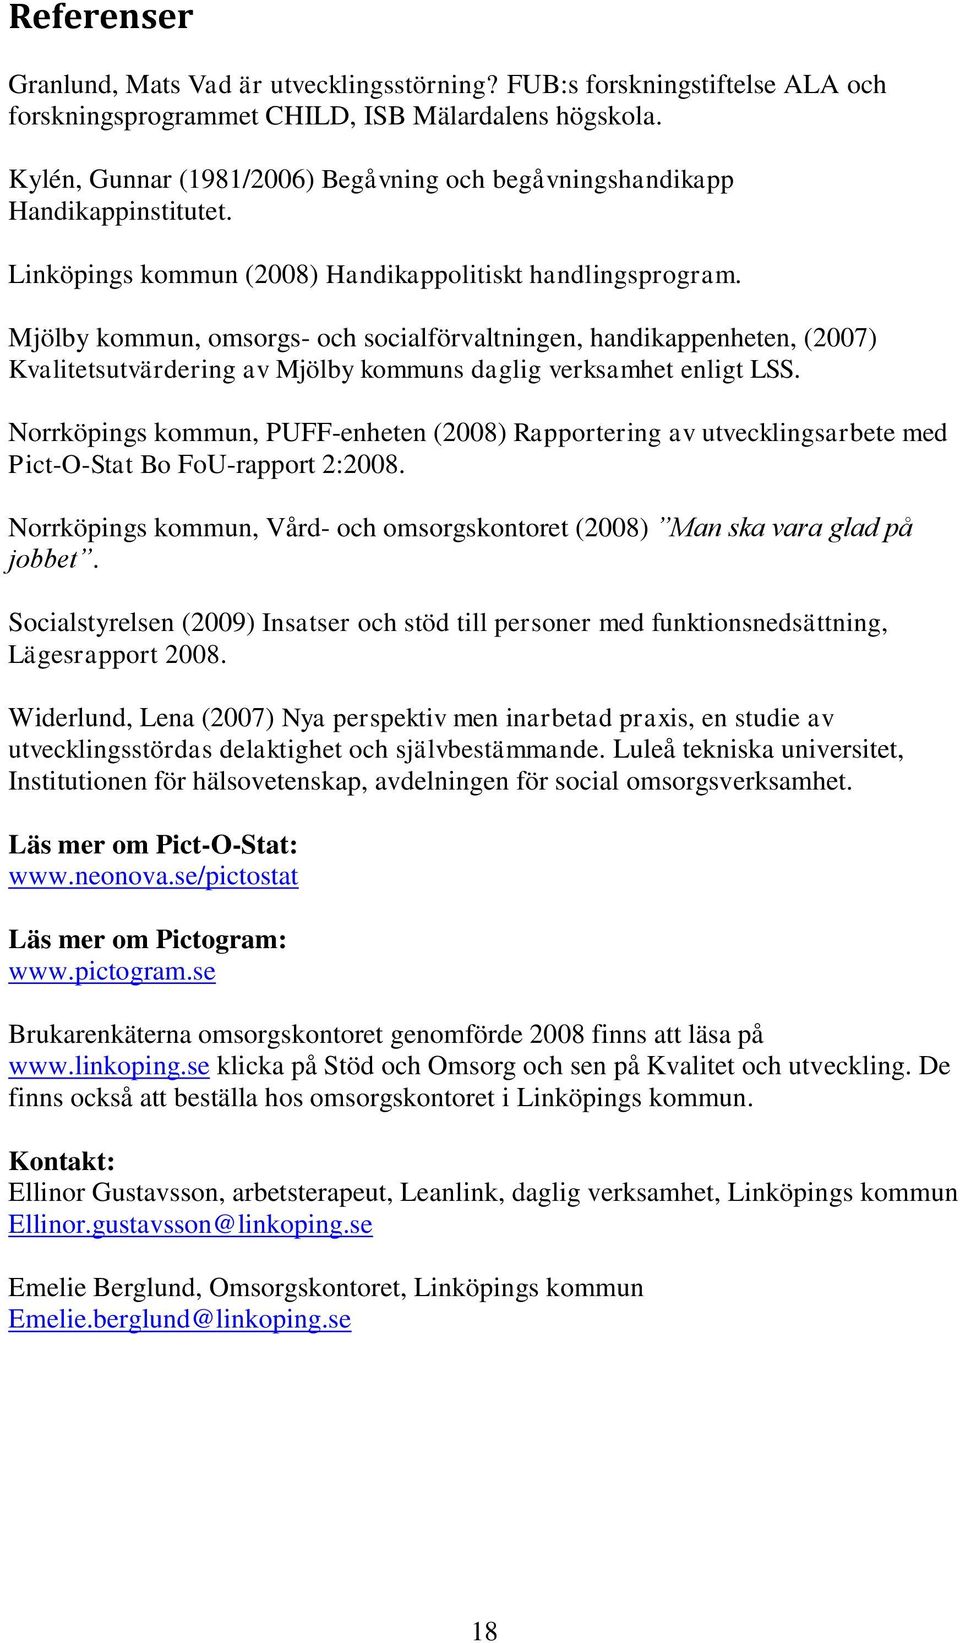 Mjölby kommun, omsorgs- och socialförvaltningen, handikappenheten, (2007) Kvalitetsutvärdering av Mjölby kommuns daglig verksamhet enligt LSS.